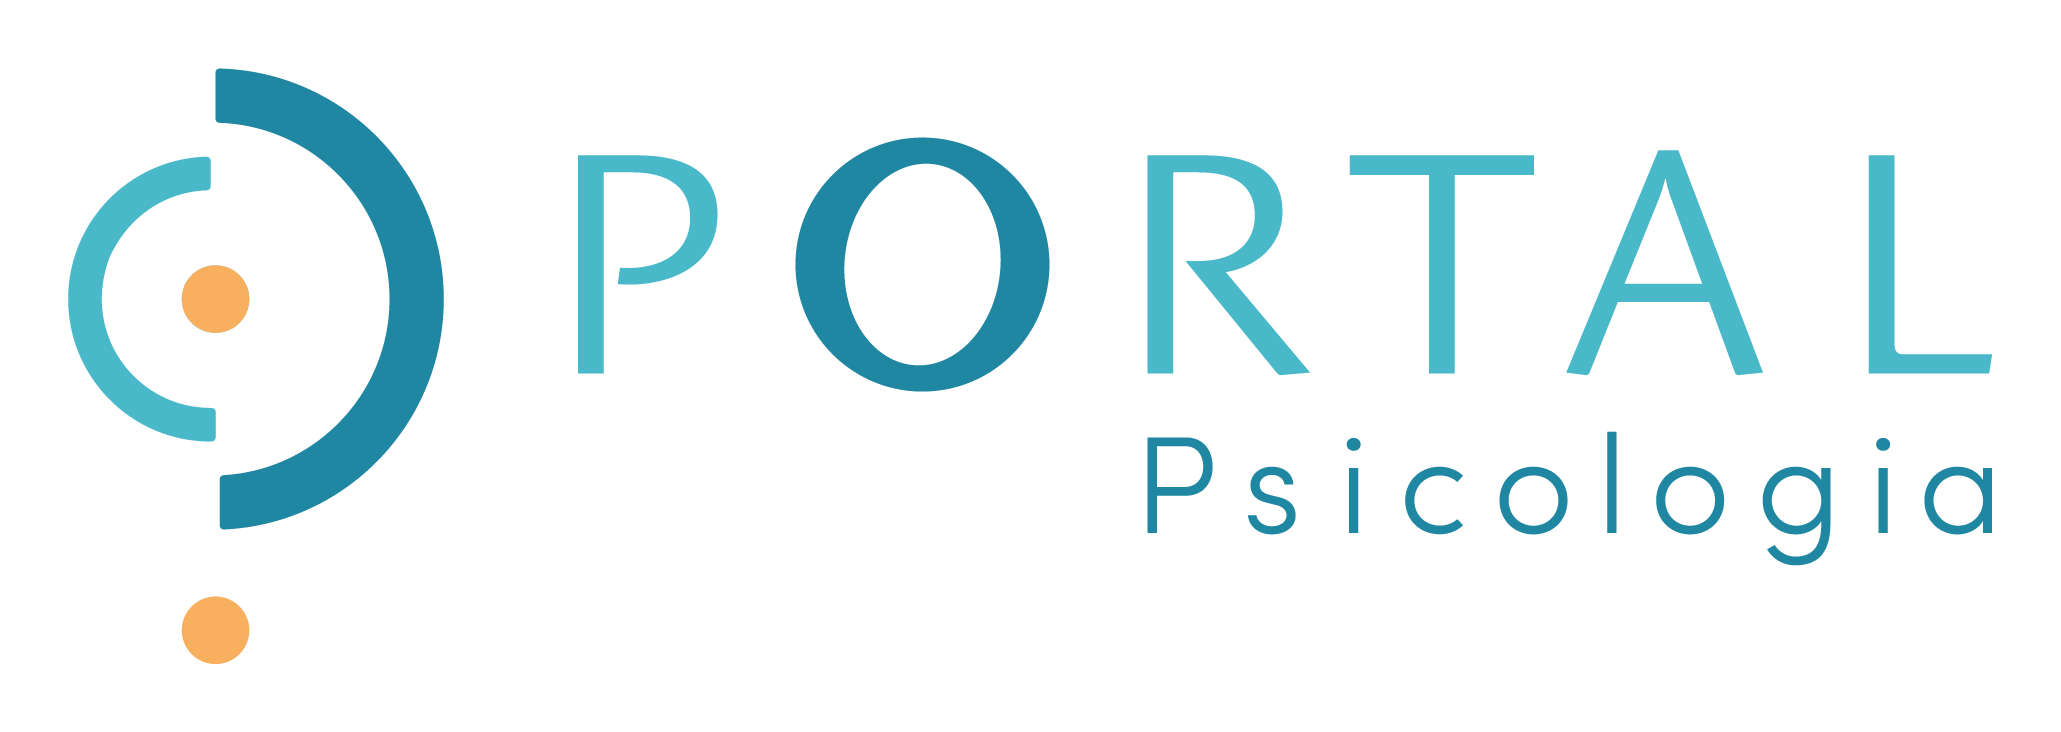 Clinica Portal Psicologia